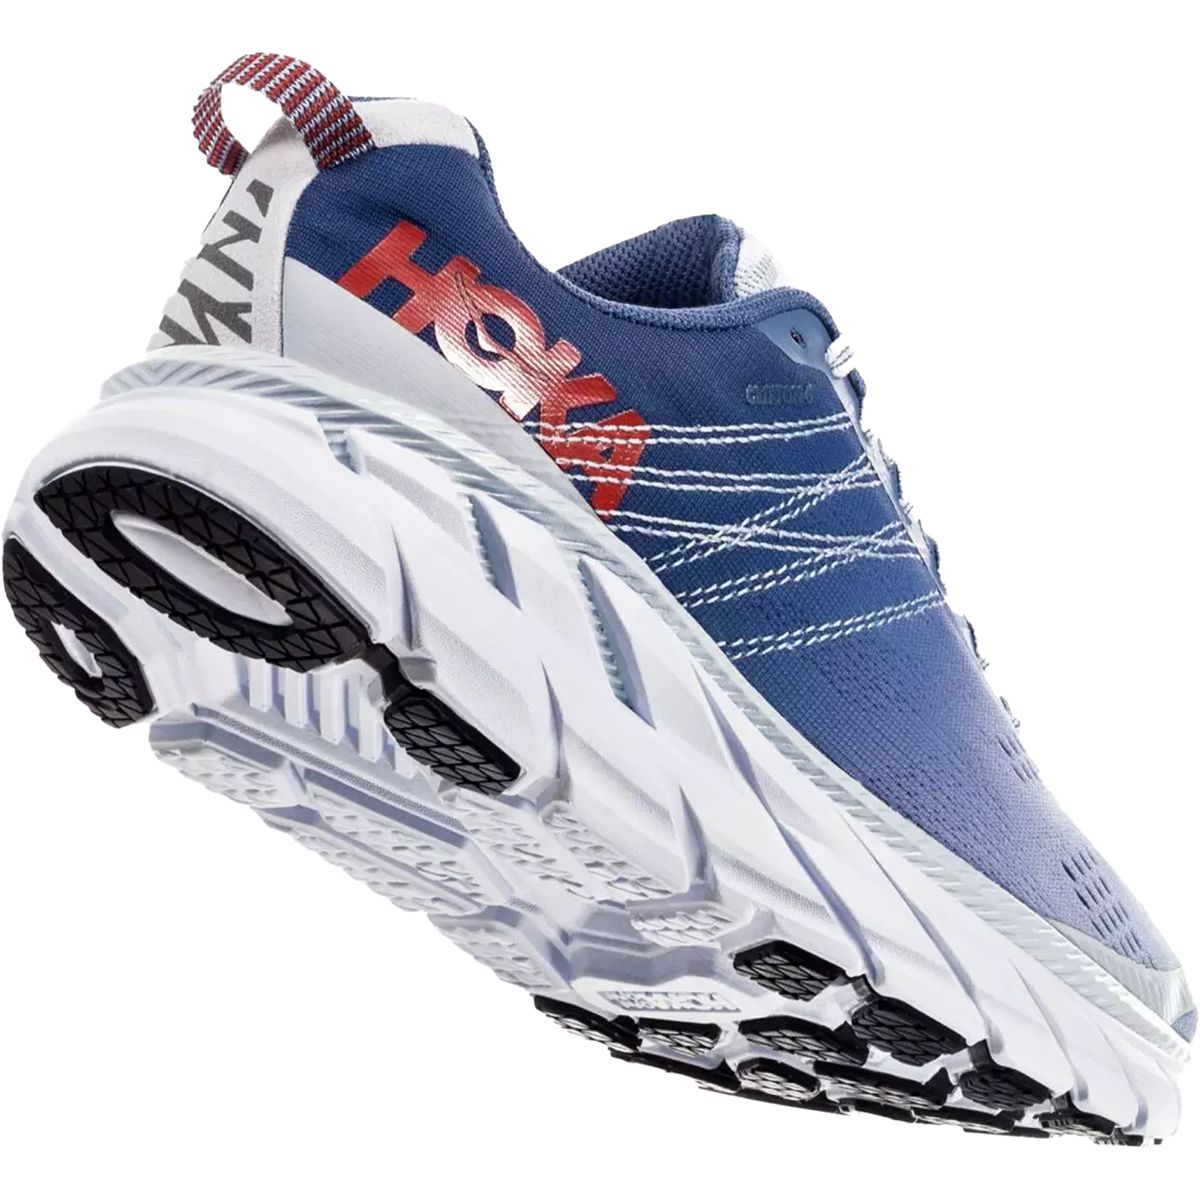 HOKA Clifton 6 Running Shoe - Women's - Footwear